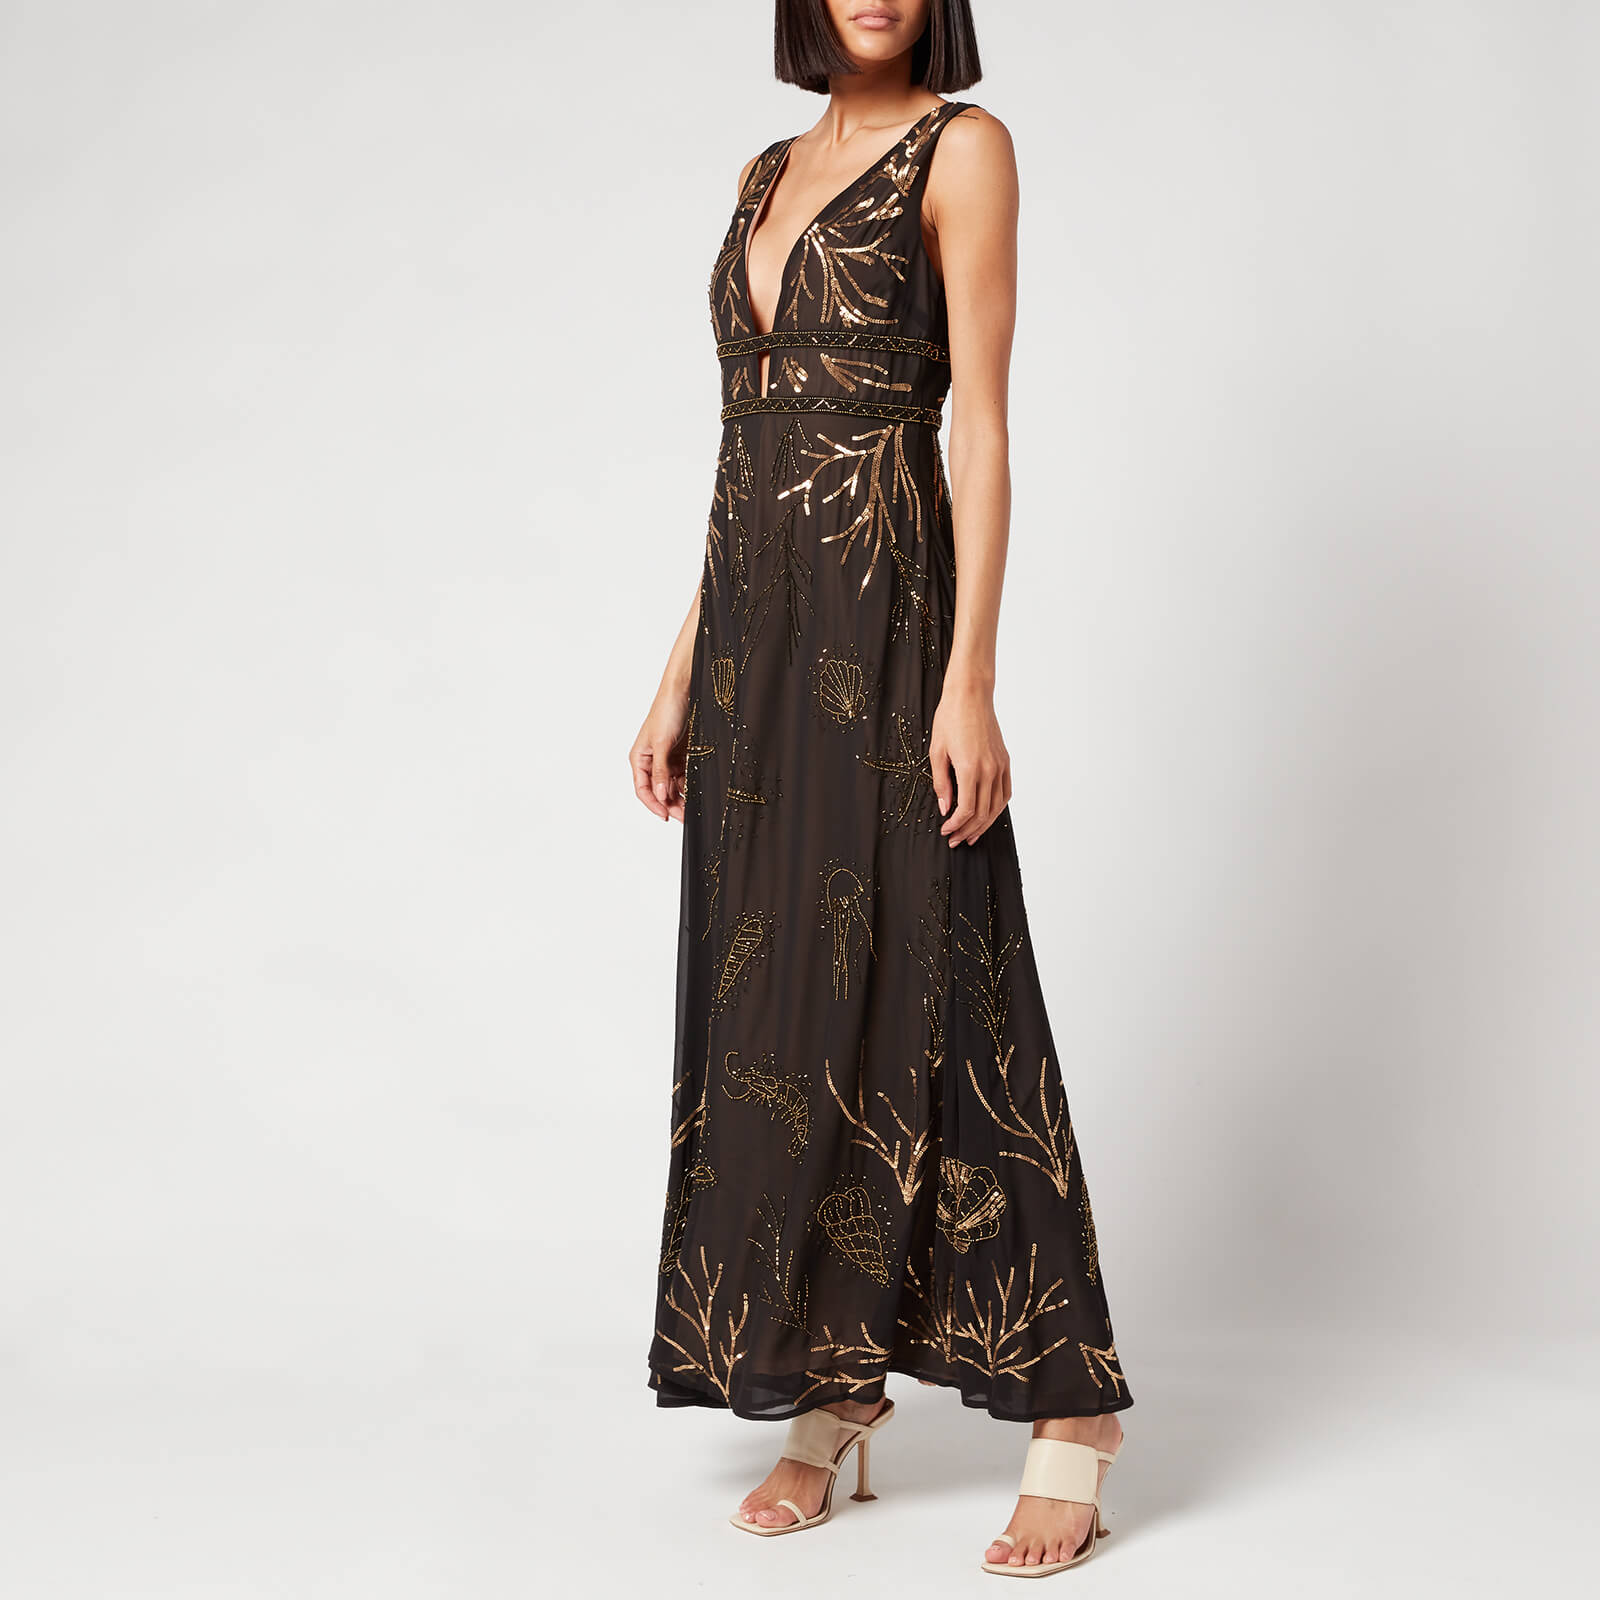 Hope & Ivy Women's Athena Dress - Black/Gold - UK 6